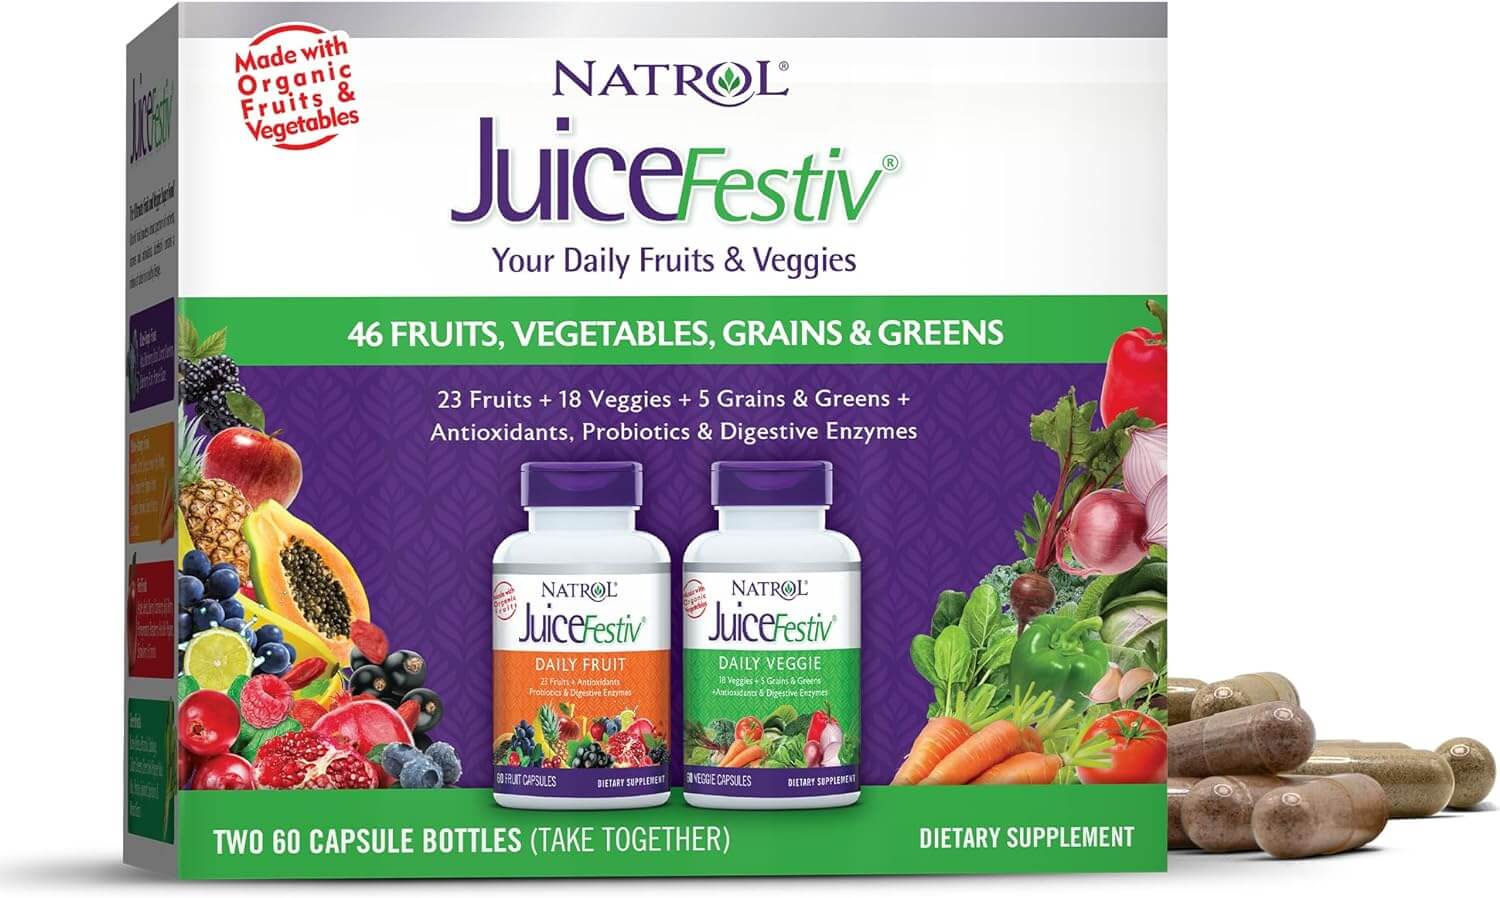 Набор пищевых добавок с экстрактами фруктов и овощей Natrol JuiceFestiv Daily, 12 упаковок по 2 банки х 60 капсул juicefestiv 2 флакона по 60 капсул natrol